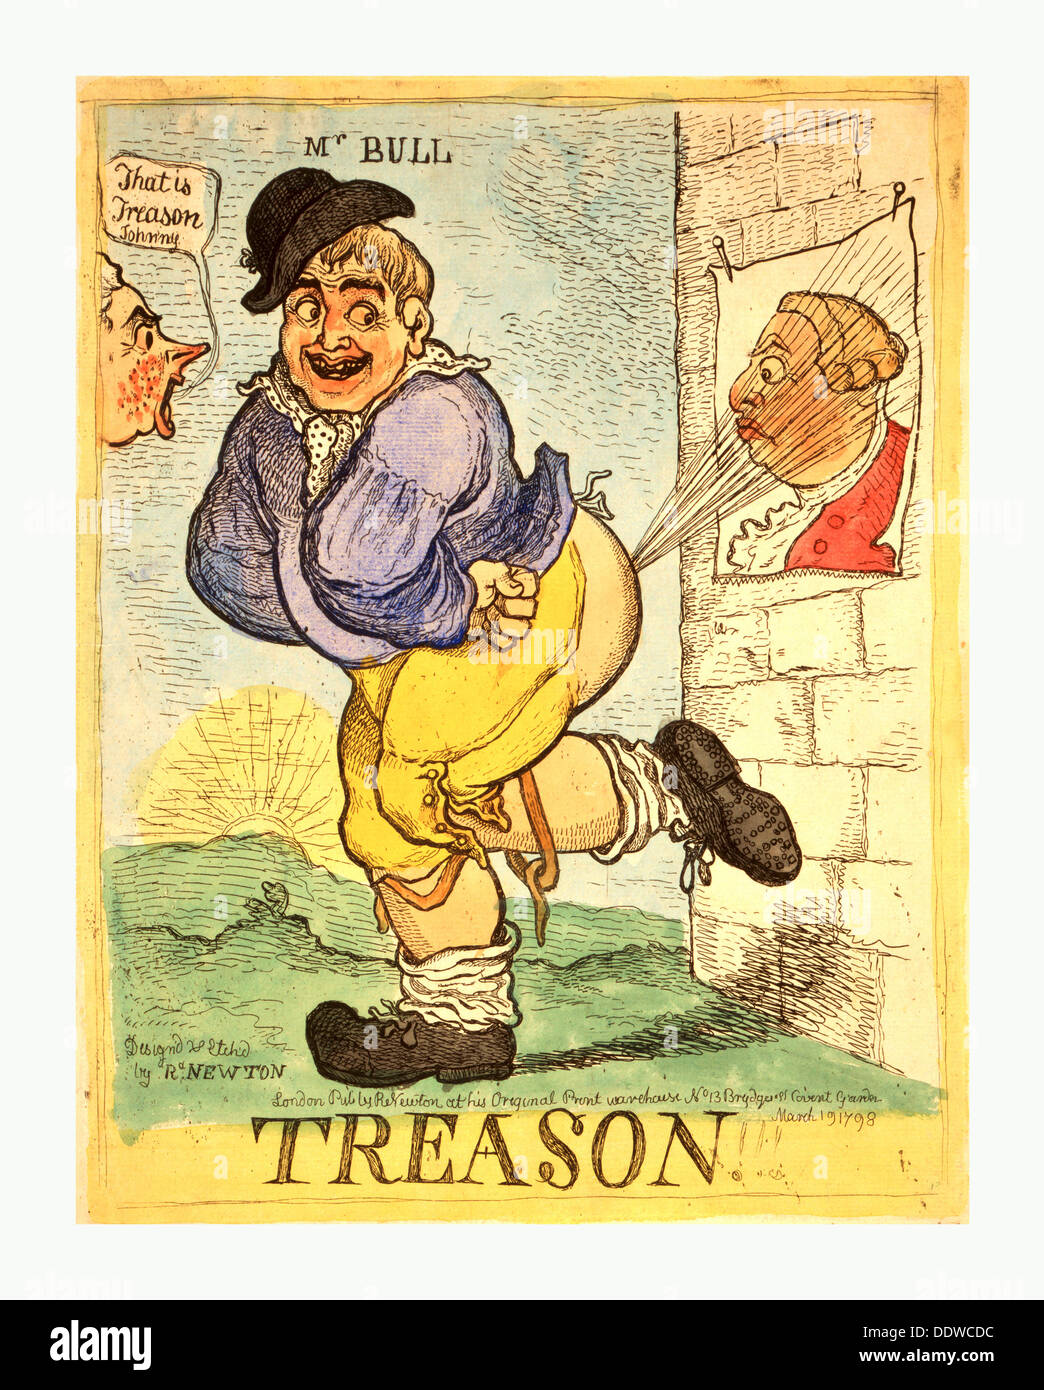 Trahison, Newton, Richard, 1777, 1798, artiste, Londres, R. Newton, 1798, un gros sourire, John Bull dirige un souffle Banque D'Images